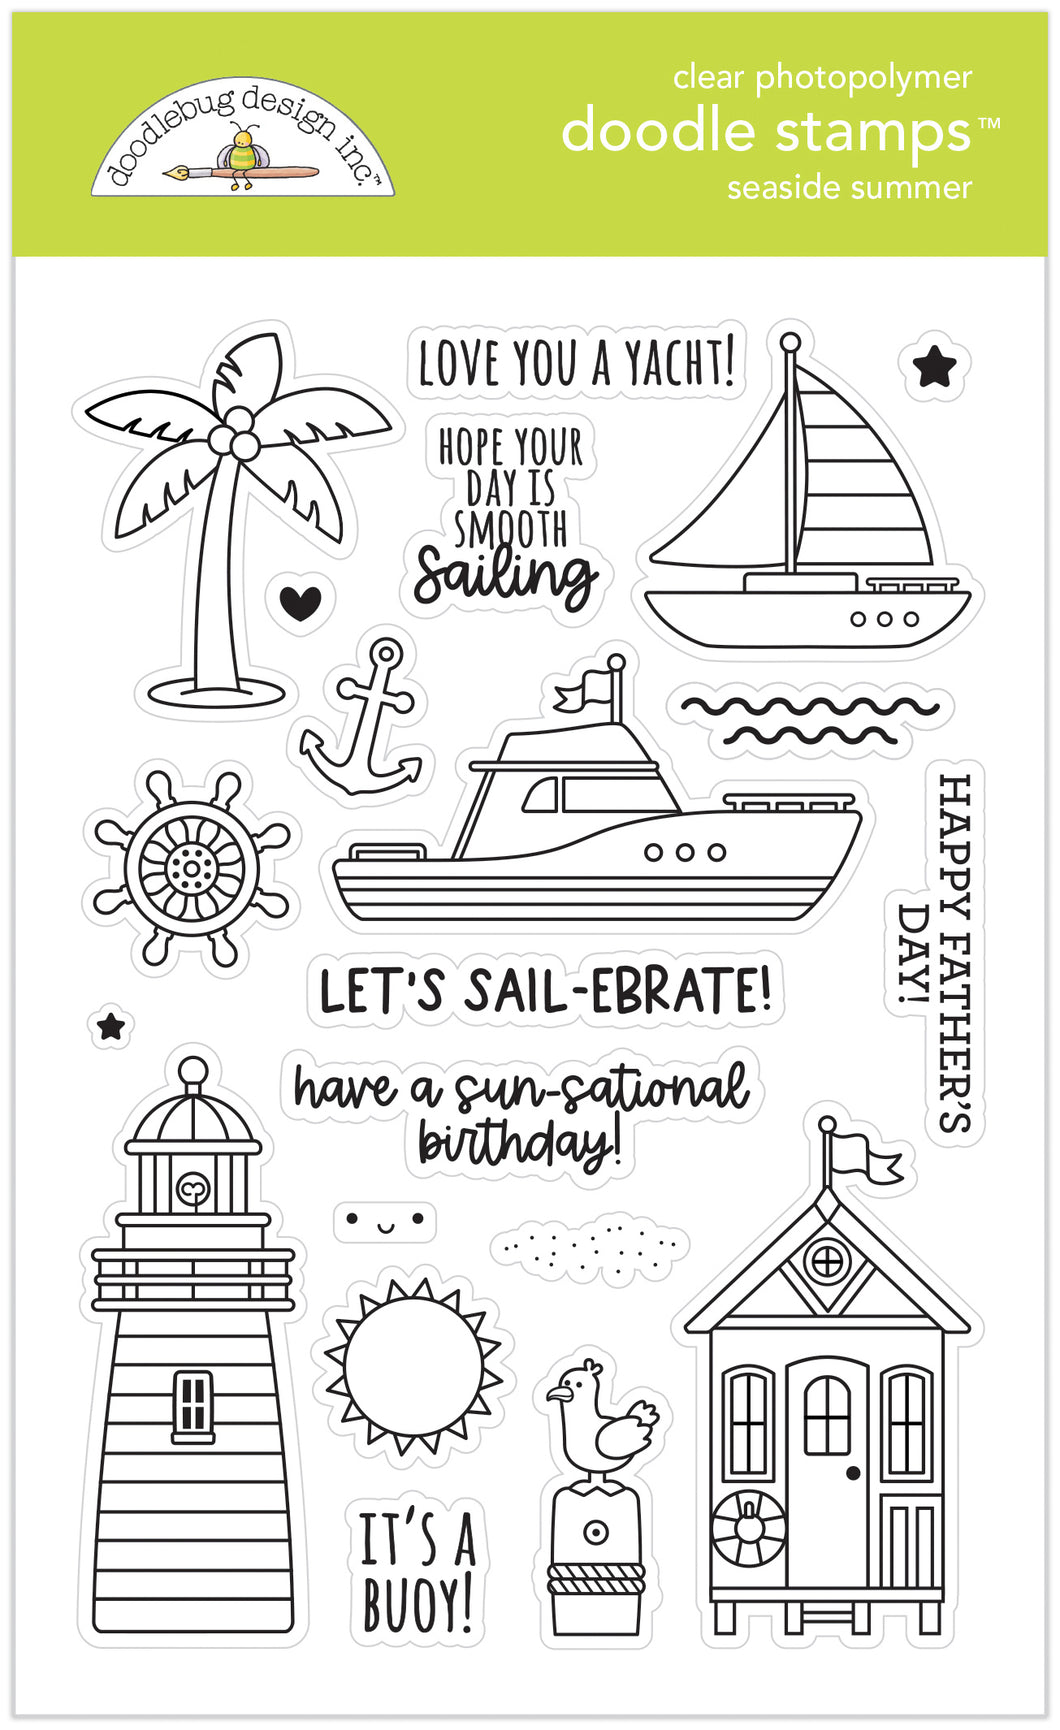 Pre-Order Doodlebug Seaside Summer Stamps